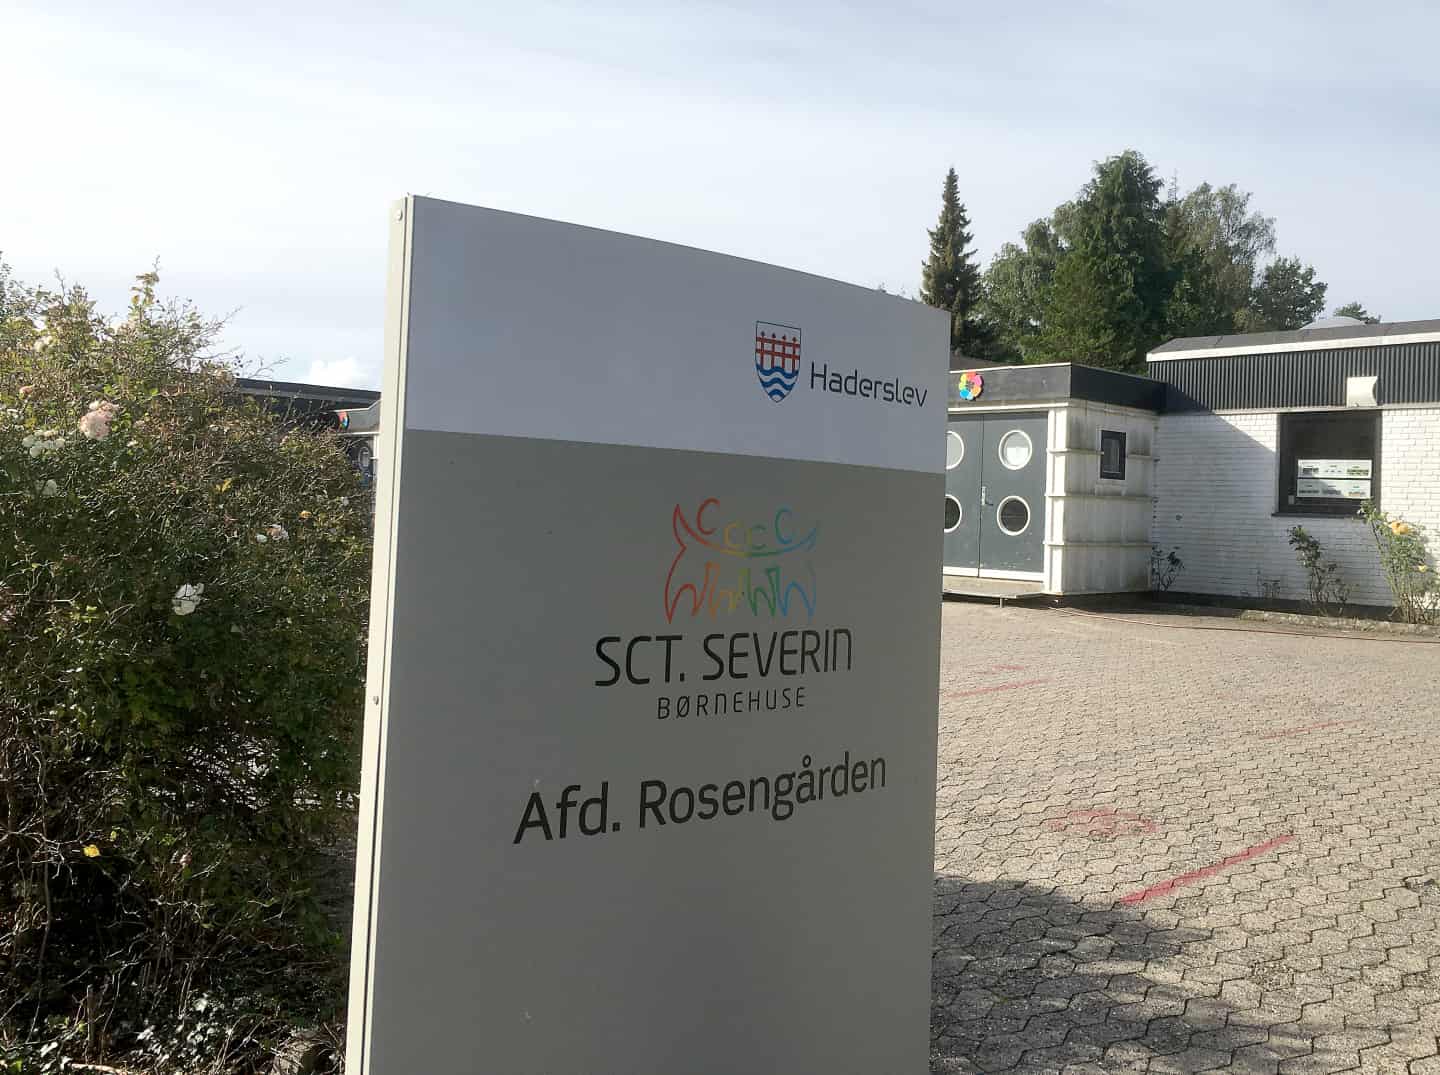 I de fleste tilfælde Fortov pust For første gang i mange år: Haderslev by får en ny børnehave | jv.dk